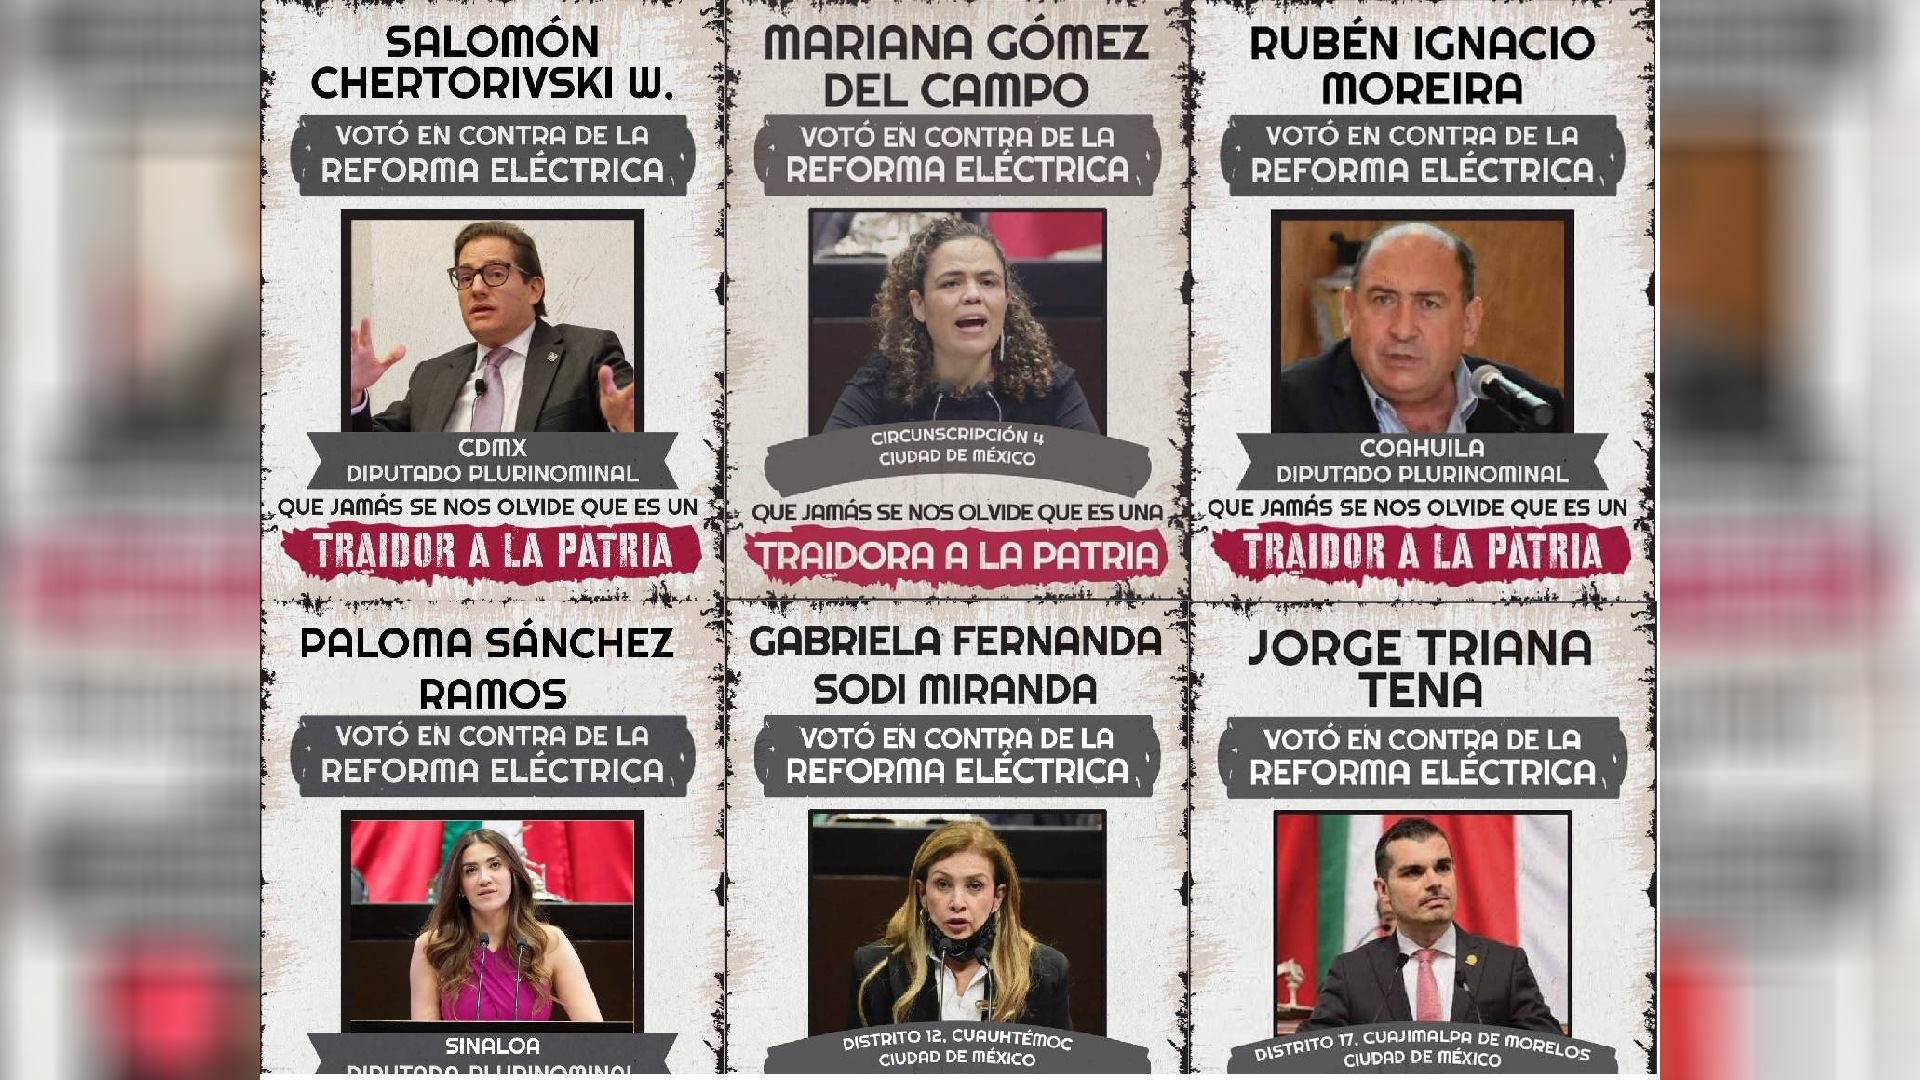 Los diputados del PRI, PAN, PRD y MC aludidos a traidores (Foto: Morena)